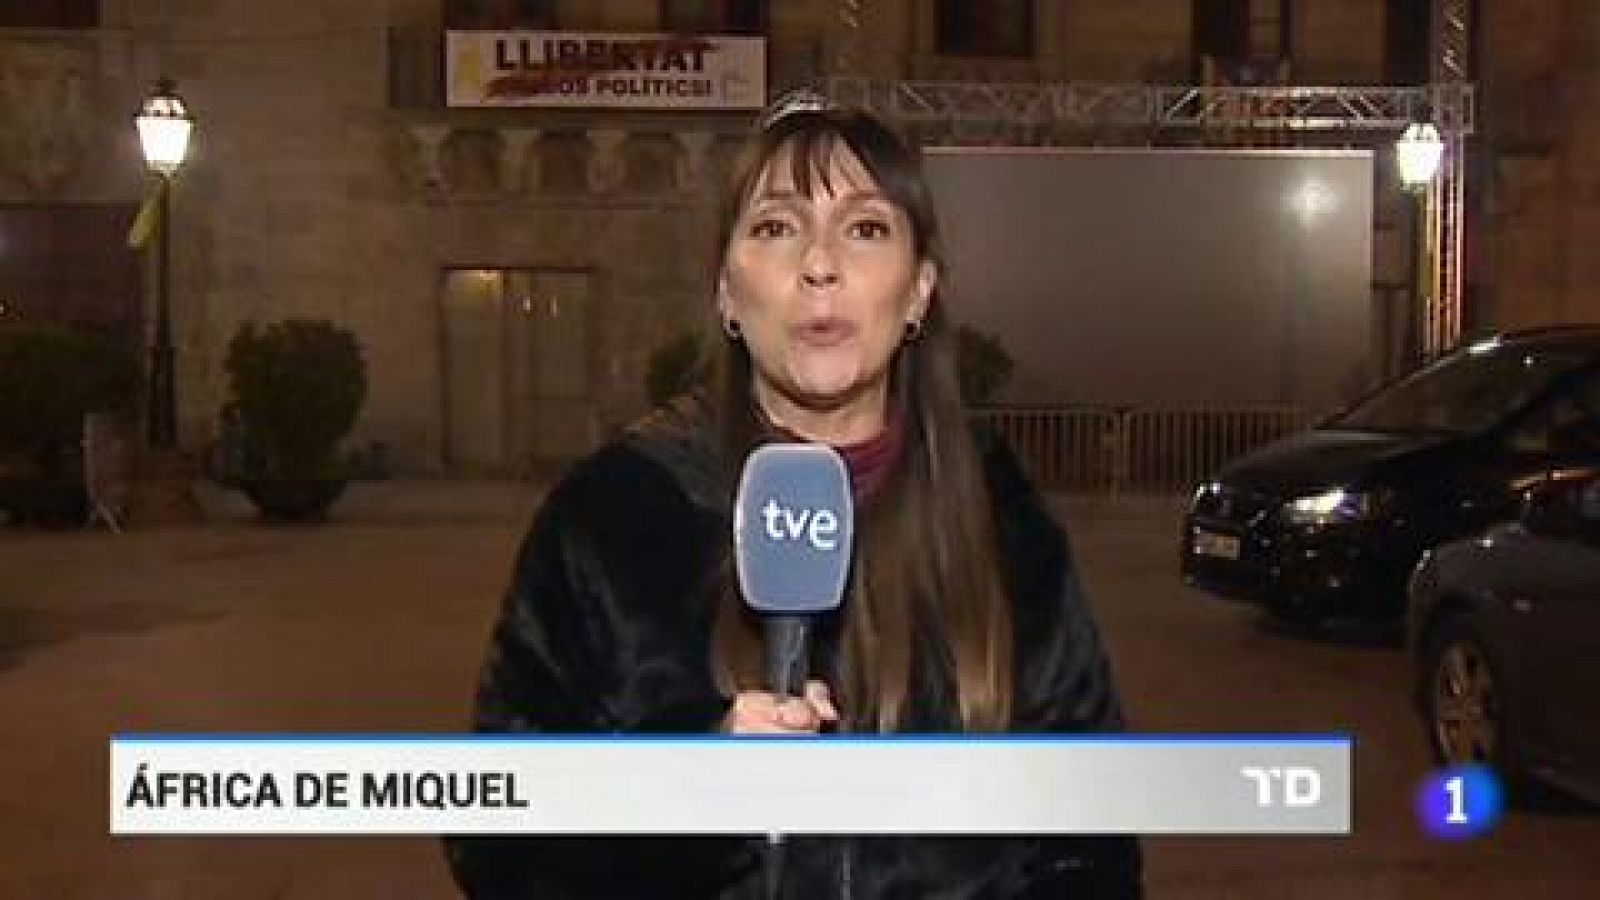 Cataluña: Márquez no saldrá al balcón del ayuntamiento de Cervera - RTVE.es